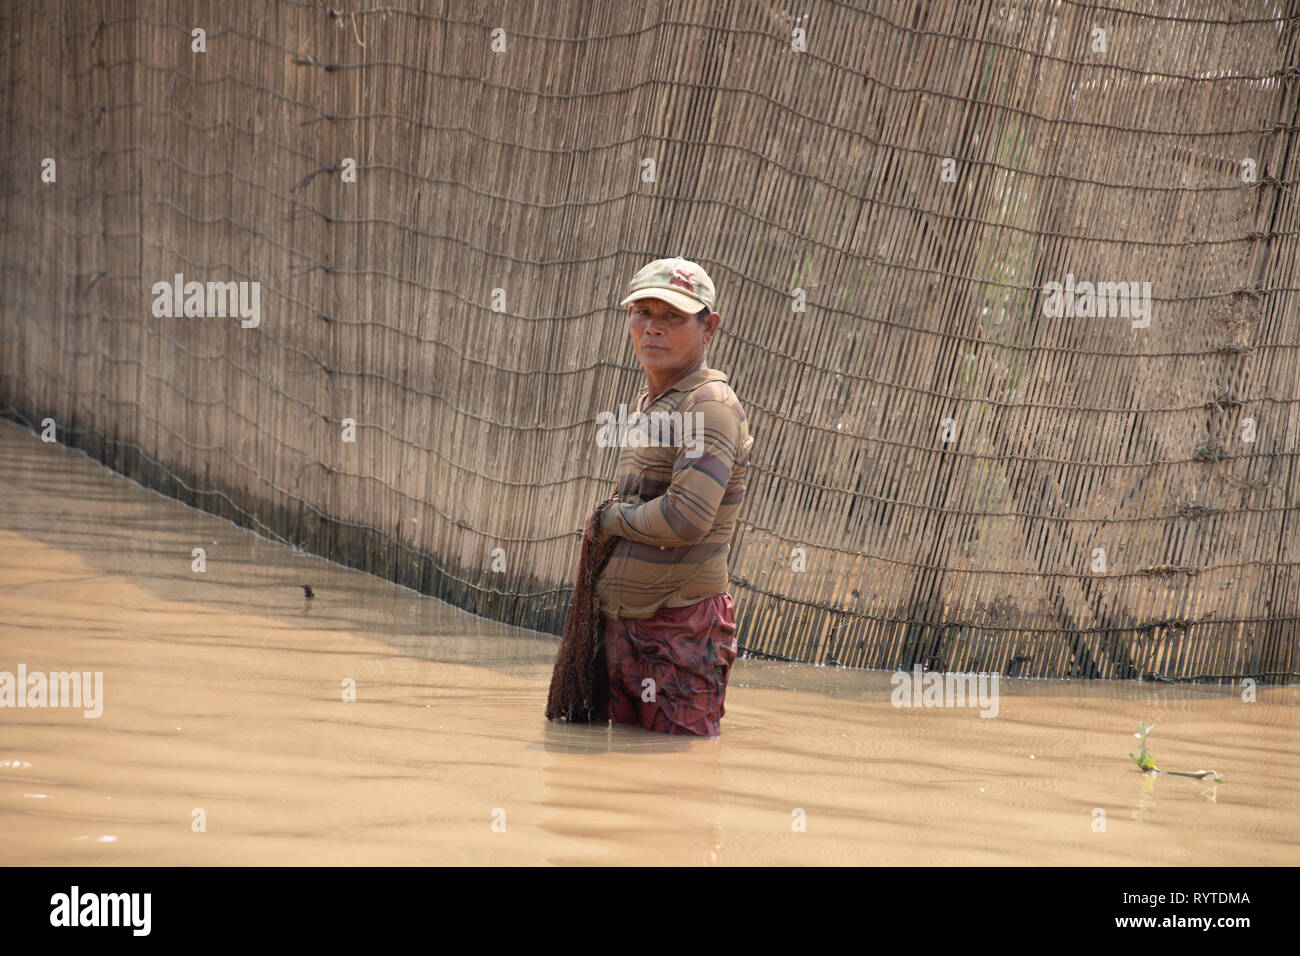 Kampong Phluk, Siem Reap, Cambodge, vendredi 15 mars 2019. Météo Cambodge : la période de temps sec chaud continue avec un maximum de 36 degrés et les bas de 26 degrés. Les pêcheurs cambodgiens à l'aide de filets près de Tonie sap tôt le matin pour éviter la chaleur extrême plus tard dans la journée. La pêche est une industrie importante et les méthodes traditionnelles sont toujours utilisés dans la région de KOMPONG PHLUK. Credit : WansfordPhoto/Alamy Live News Banque D'Images